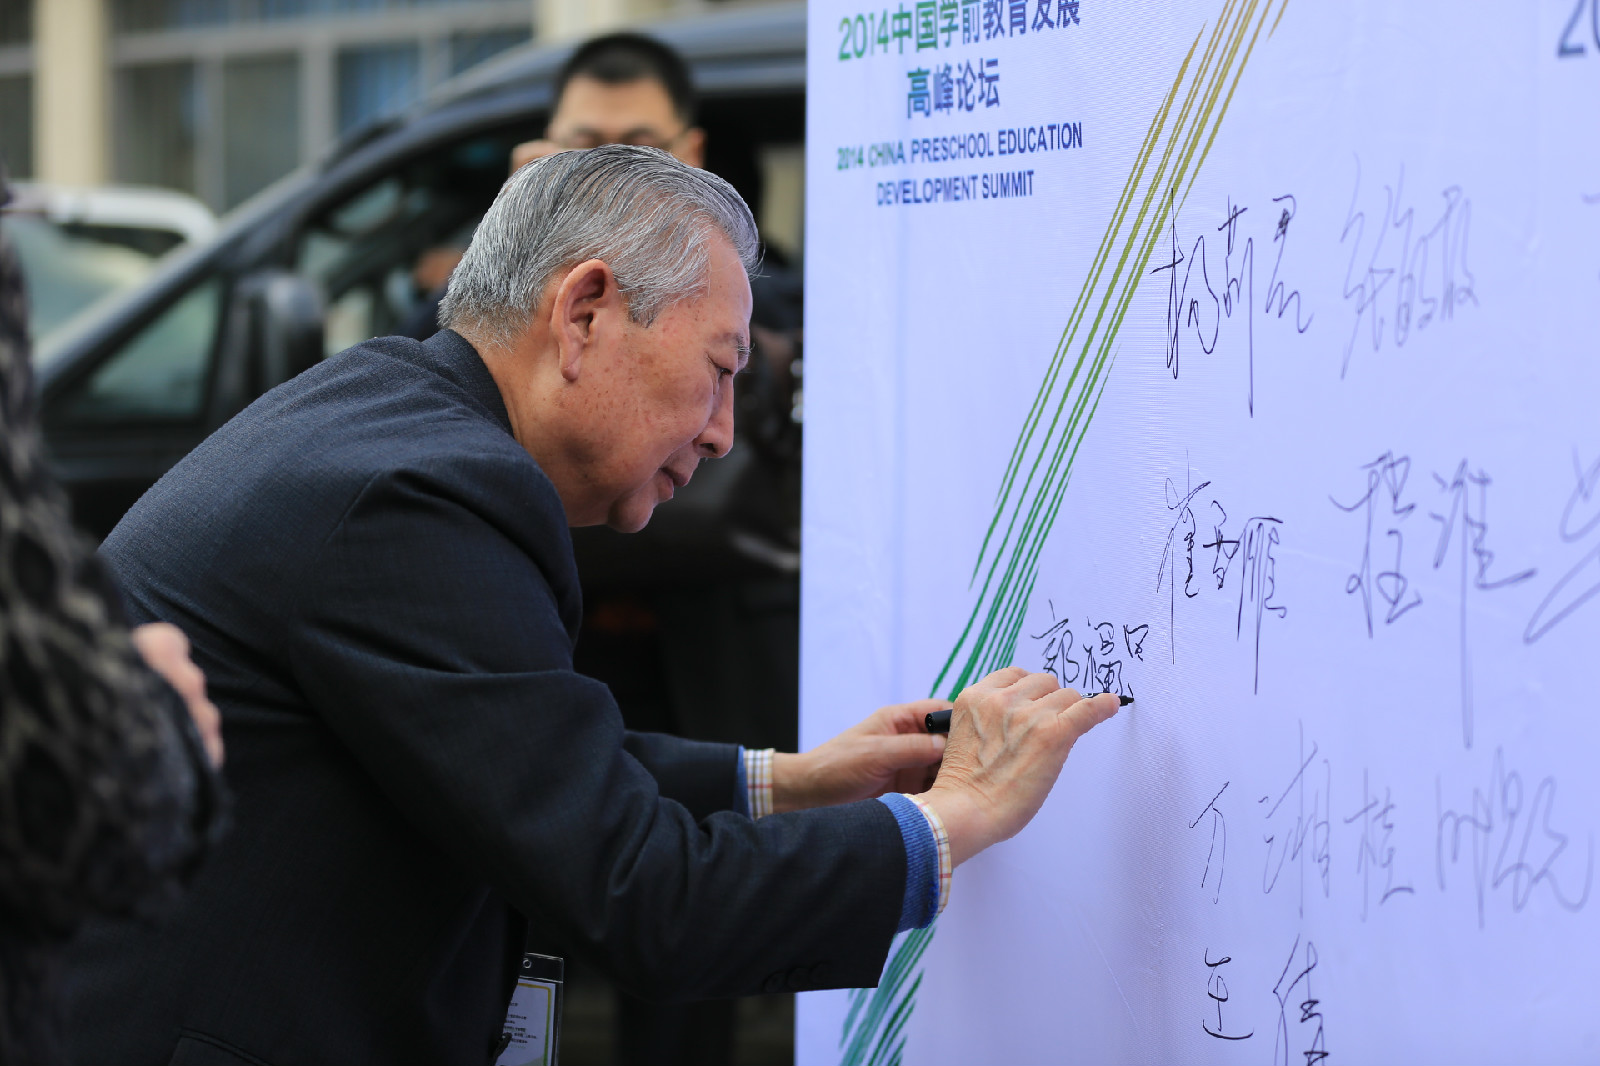 郭福昌參加2014年中國學前教育高峰論壇